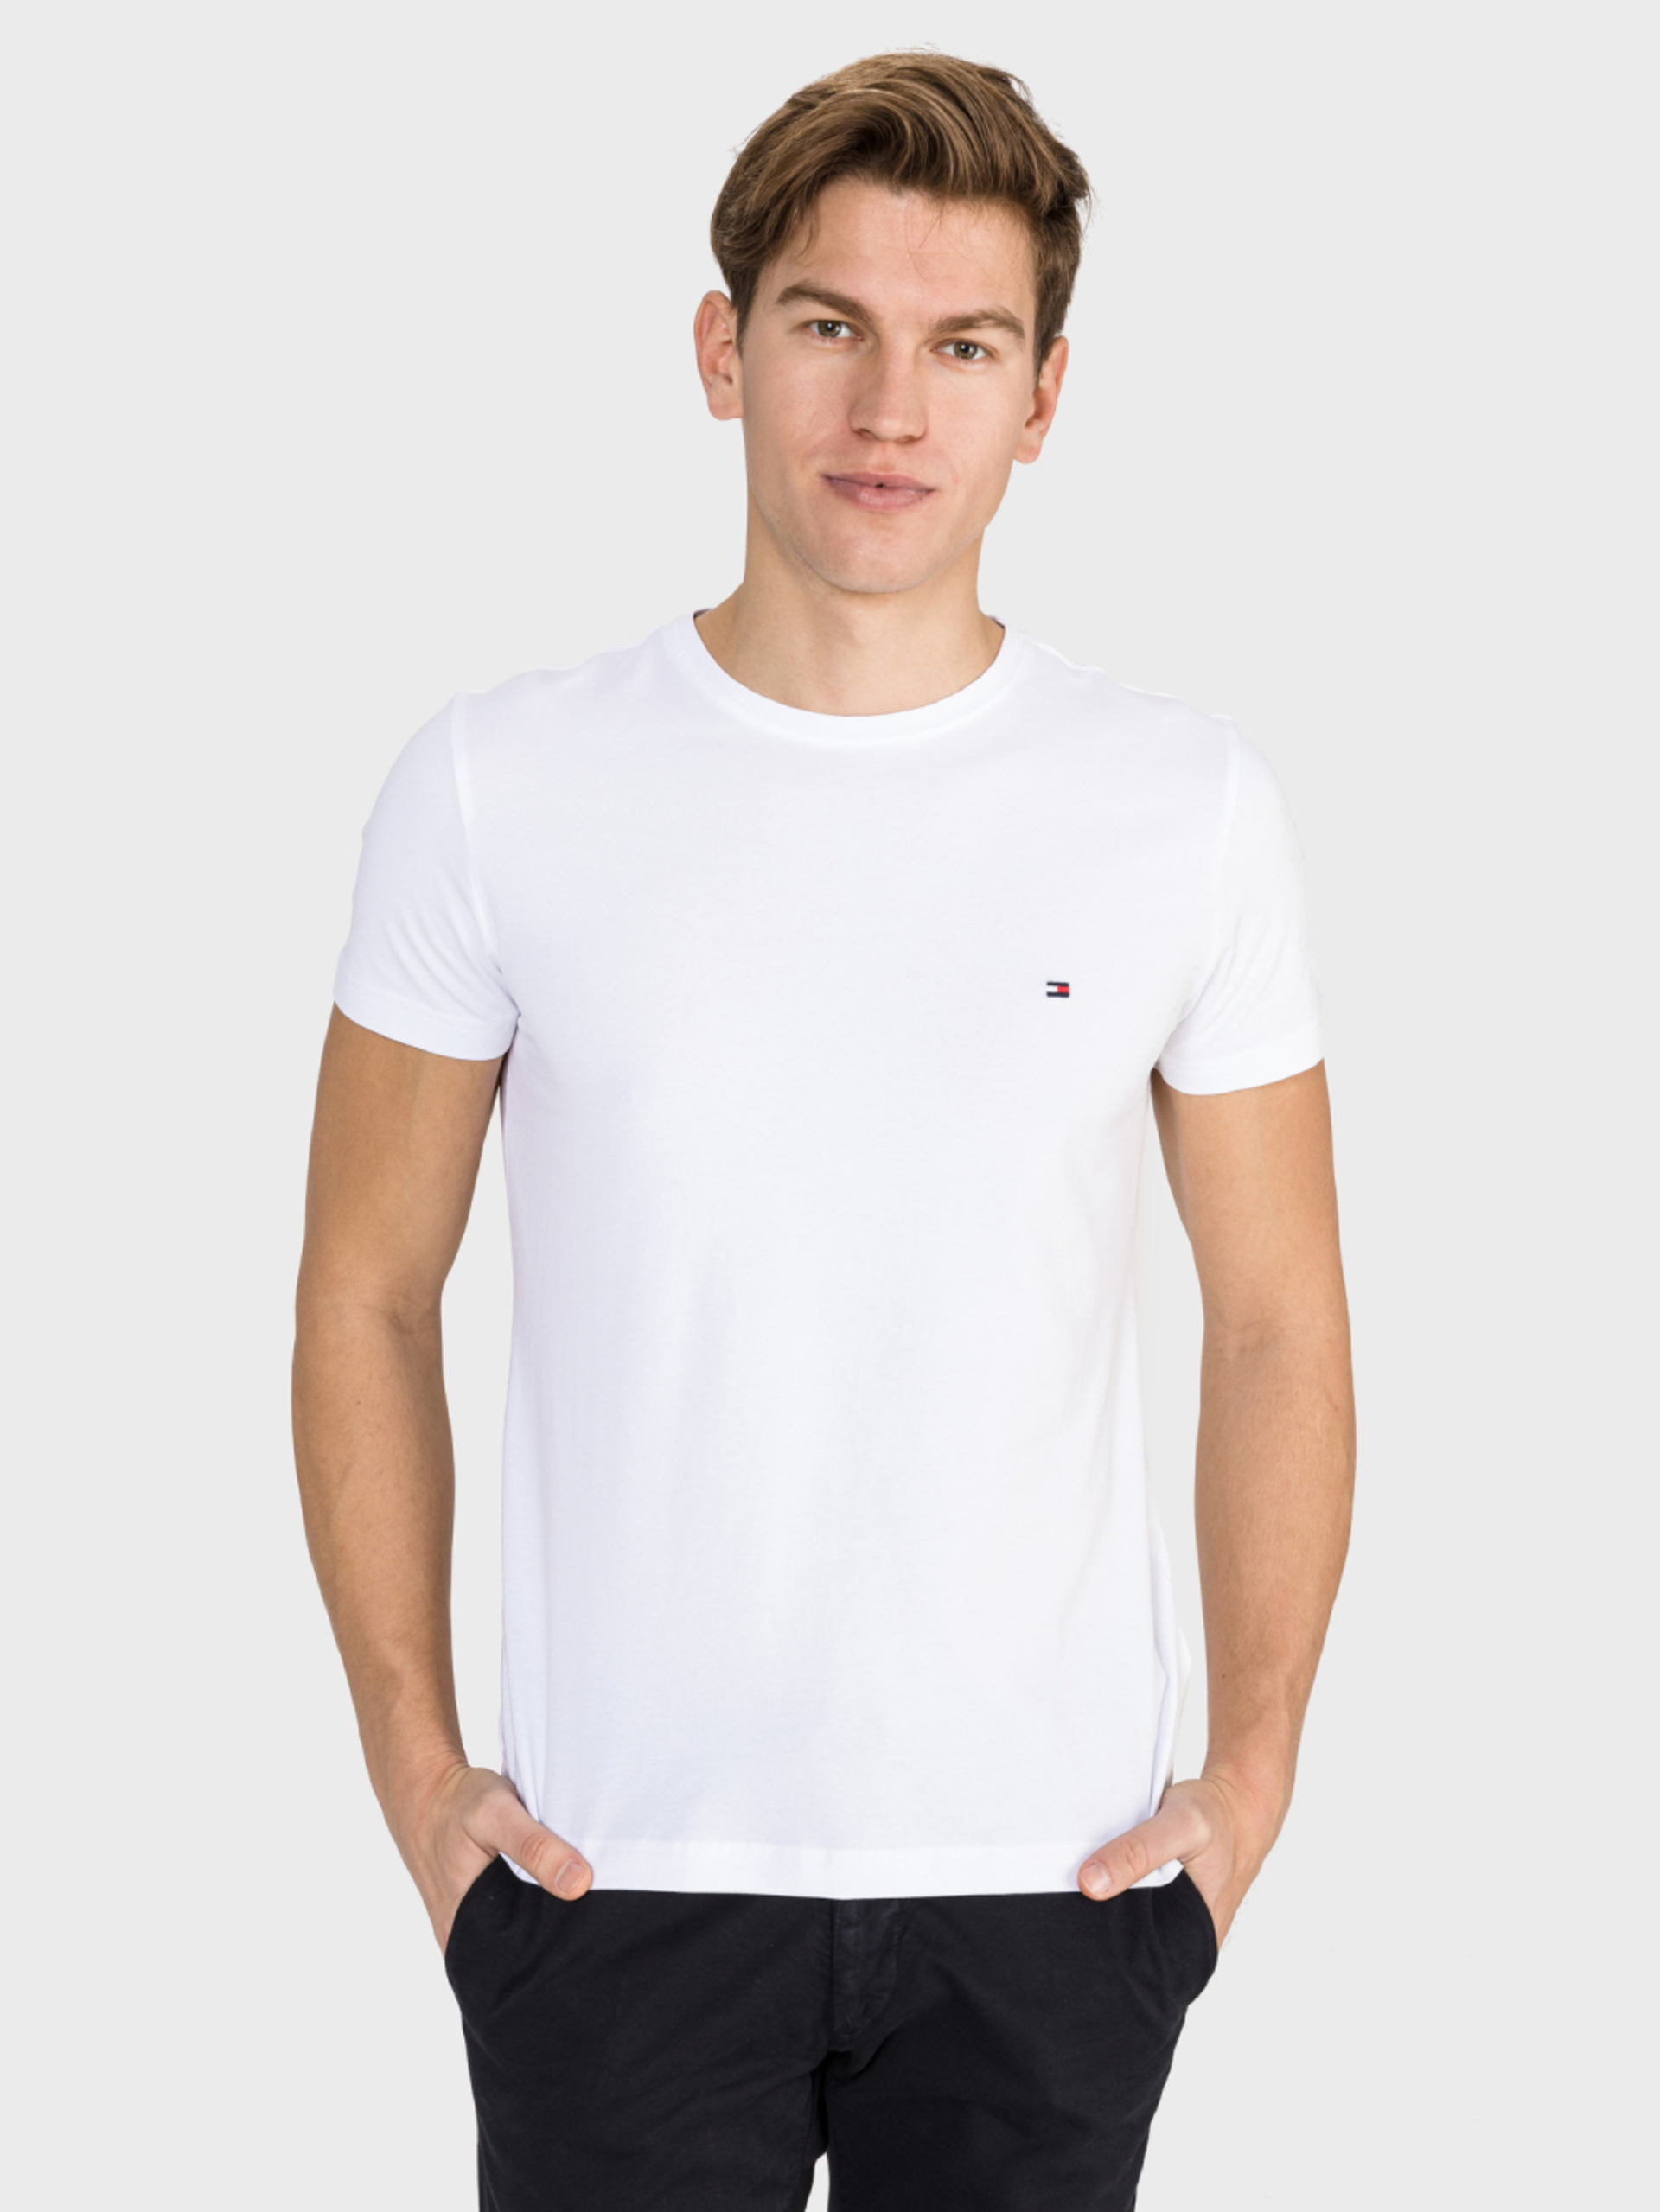 Tommy Hilfiger pánské bílé tričko Core - S (100)